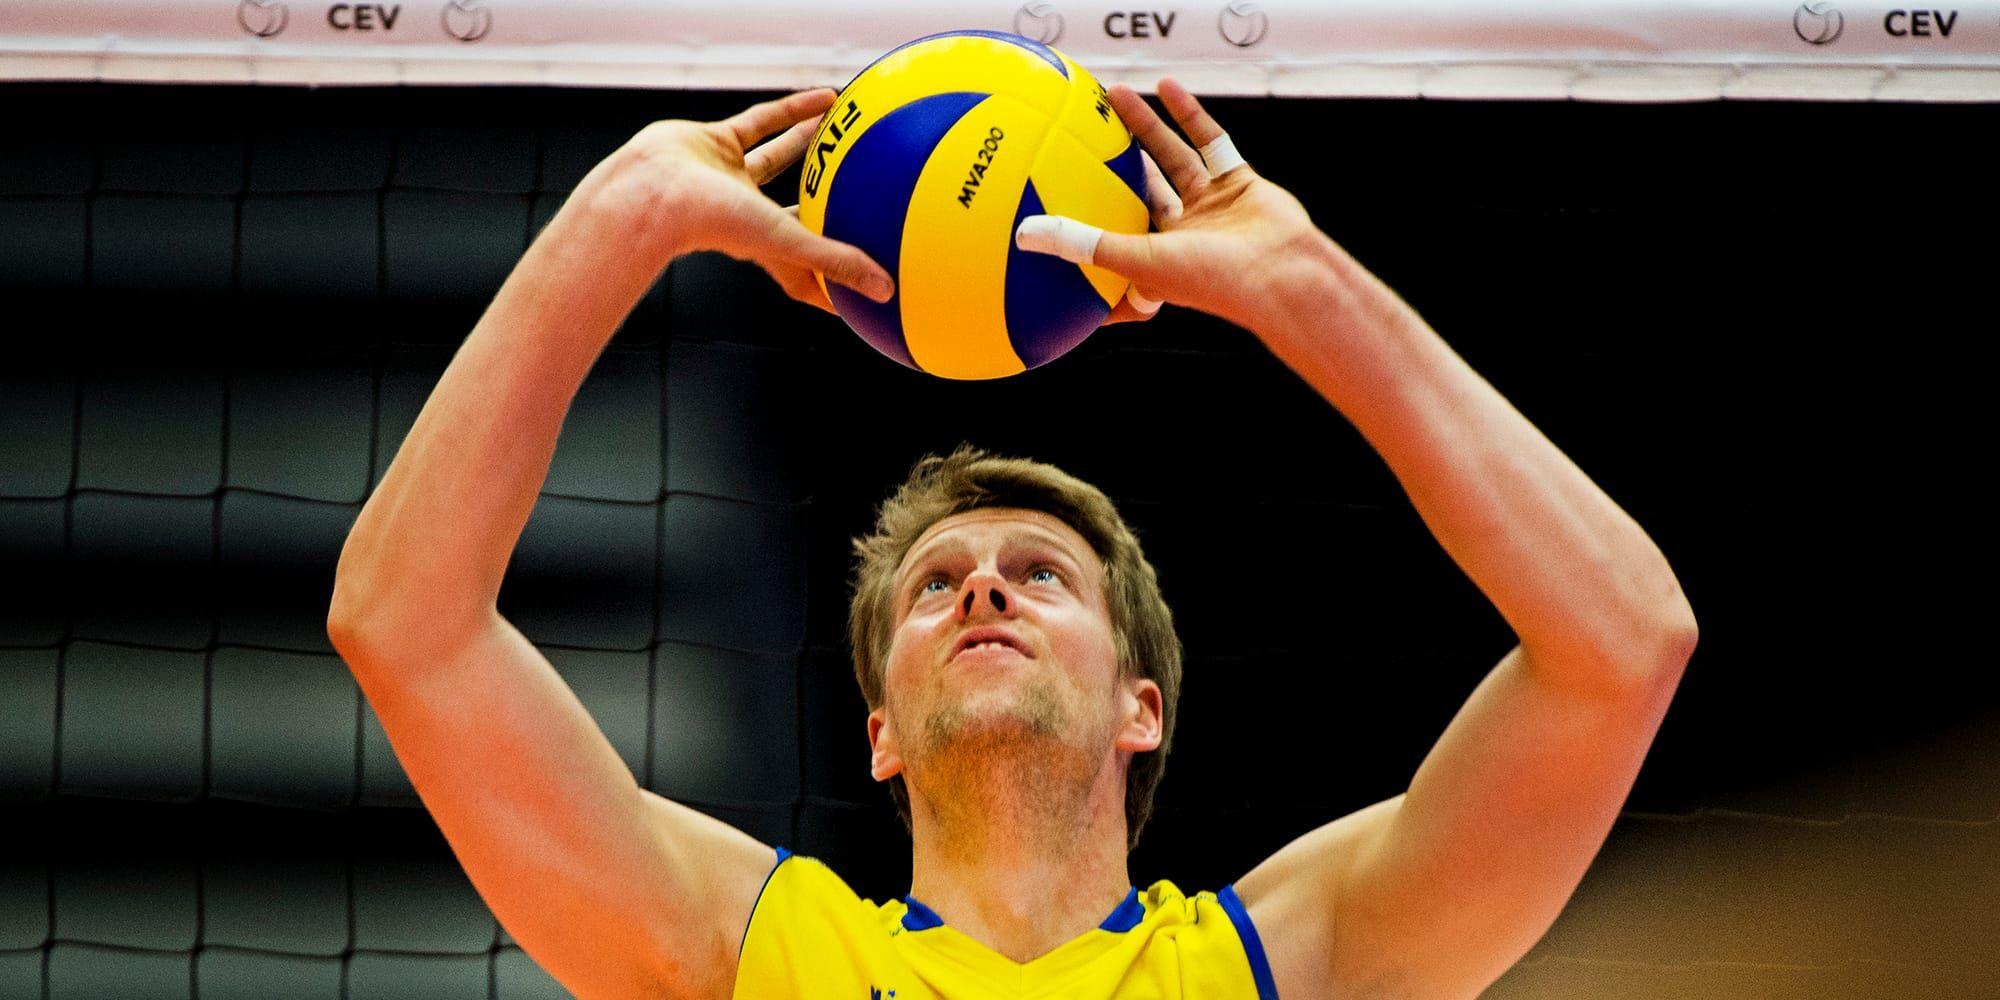 Kvar i österled. Svensk volleybolls storstjärna Marcus Nilsson har gjort sitt i Turkiet. Nästa säsong spelar Torupskillen för ryska Zenit St Petersburg.